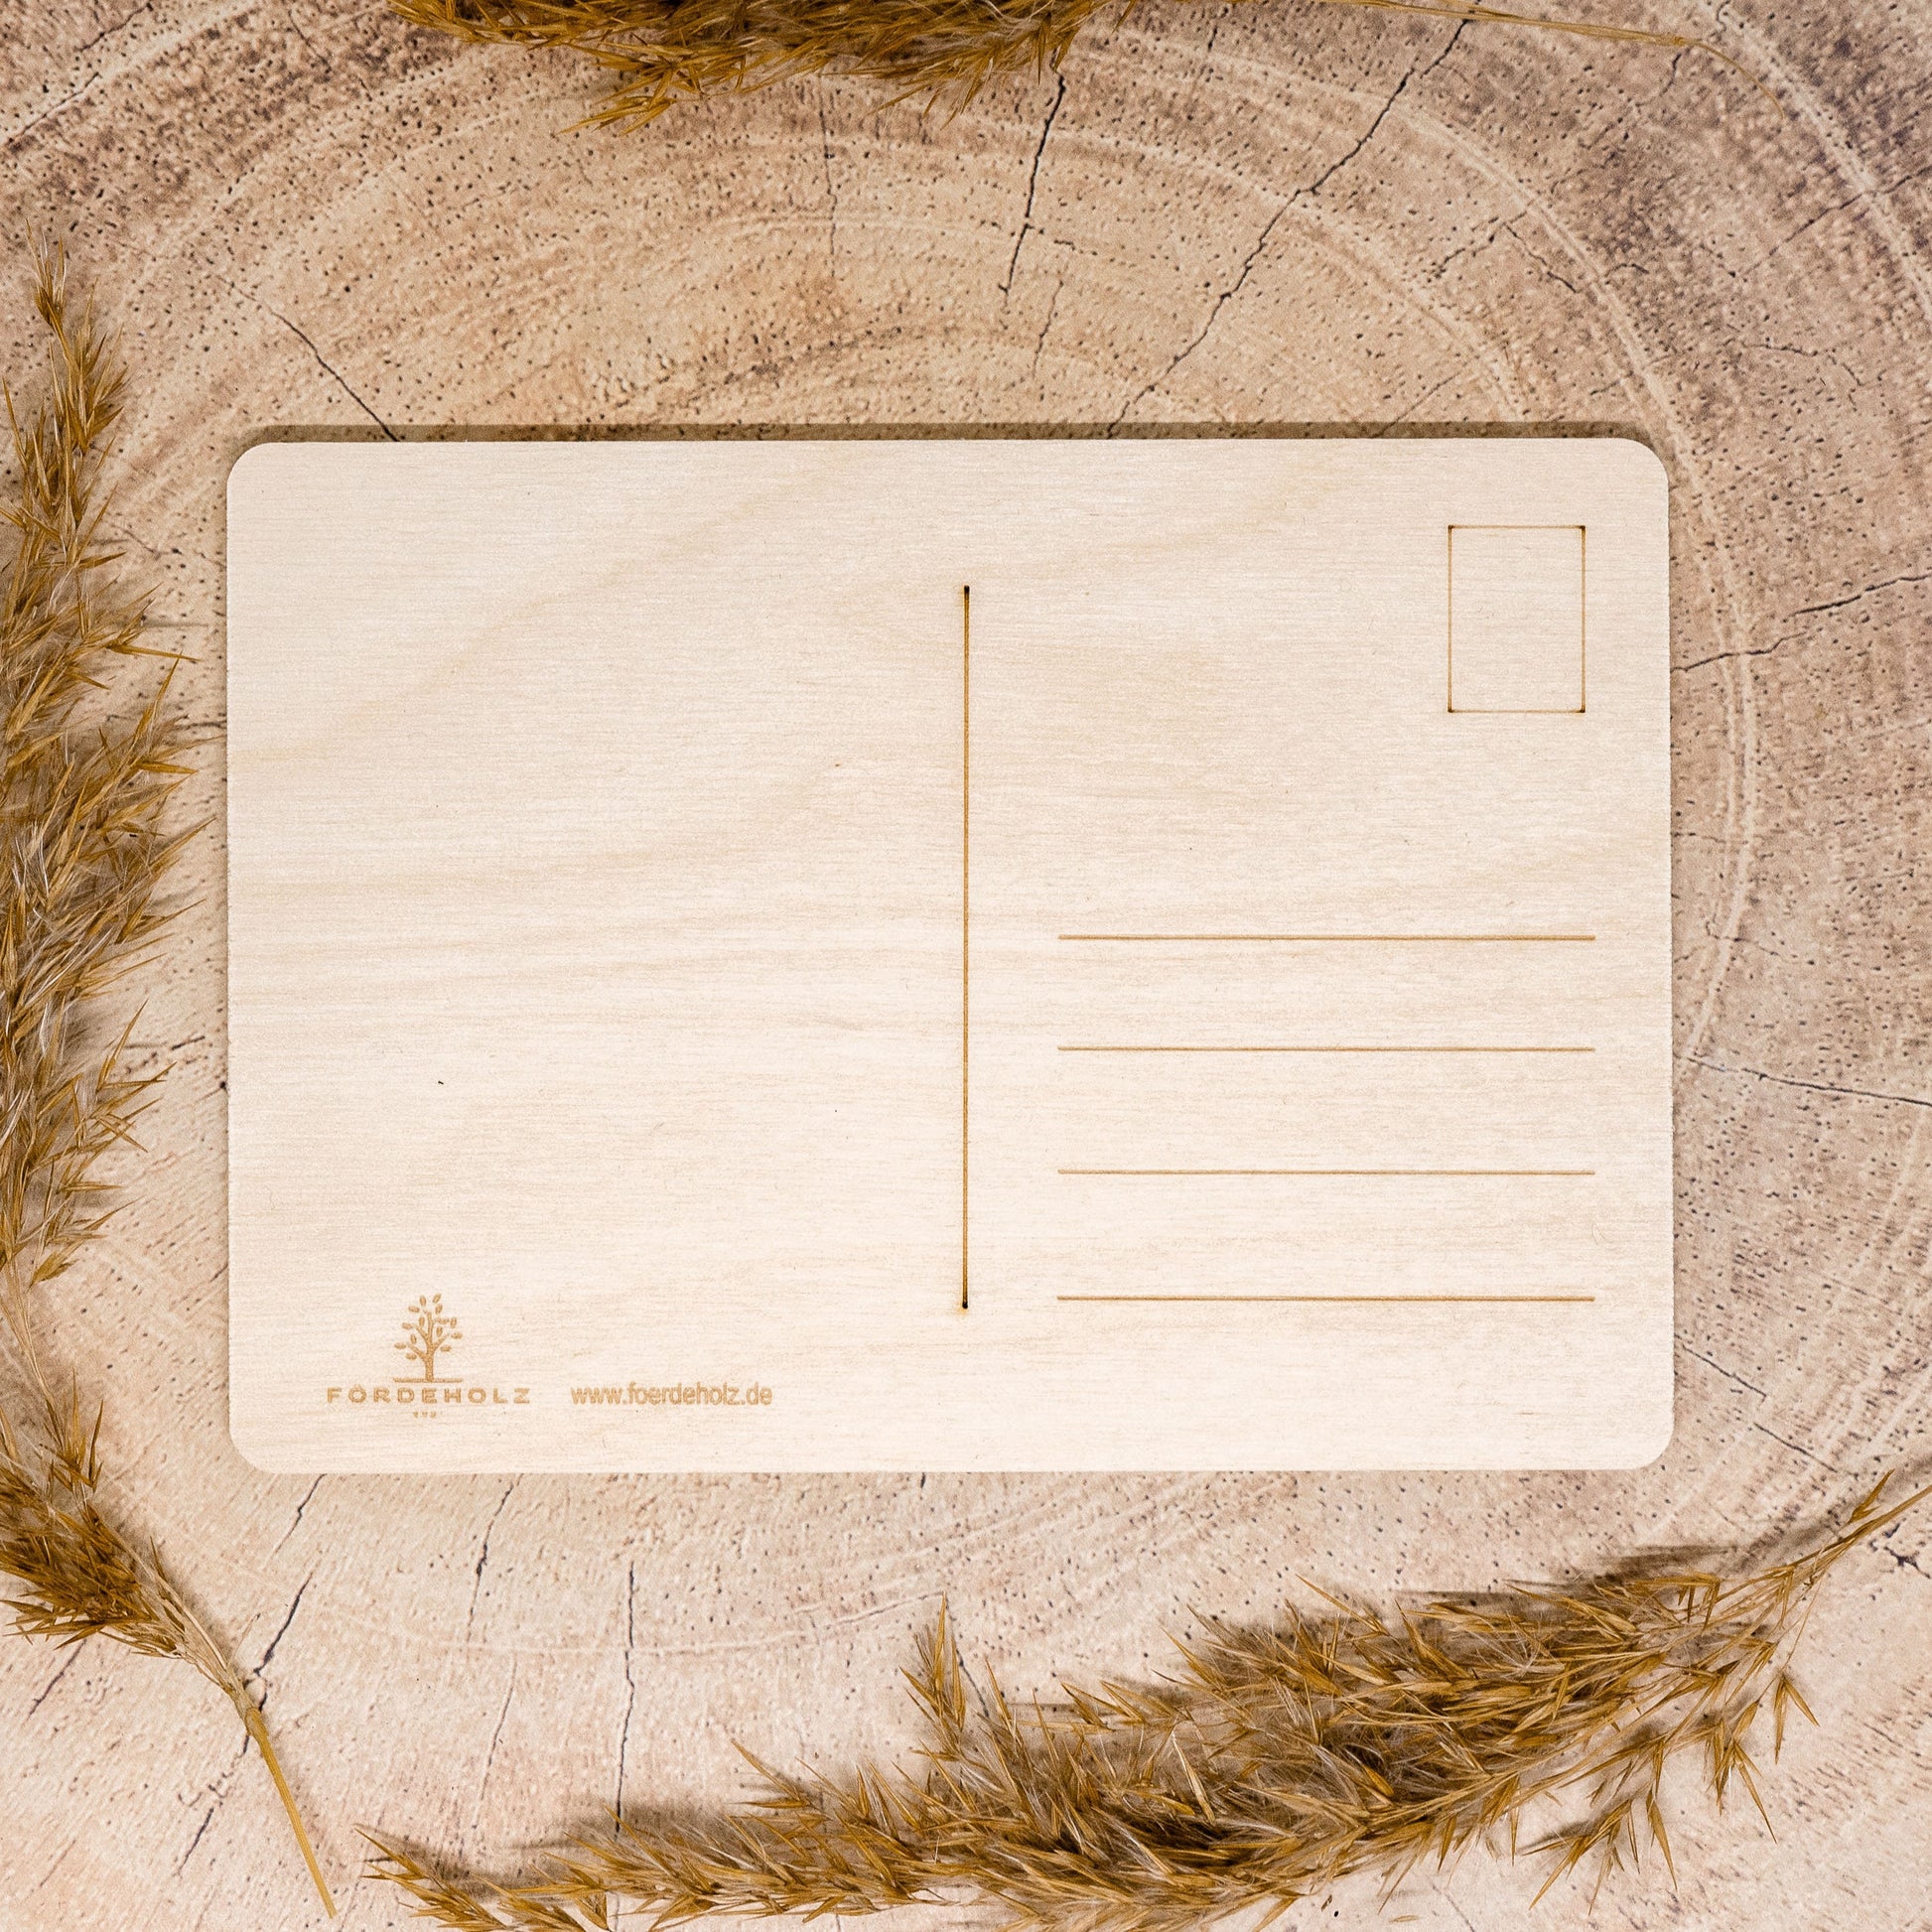 Gutschein aus Holz - Holzgutschein - Holzpostkarte - 14x10 cm - Geschenkgutschein - individuell - gravierbar - personalisierbar